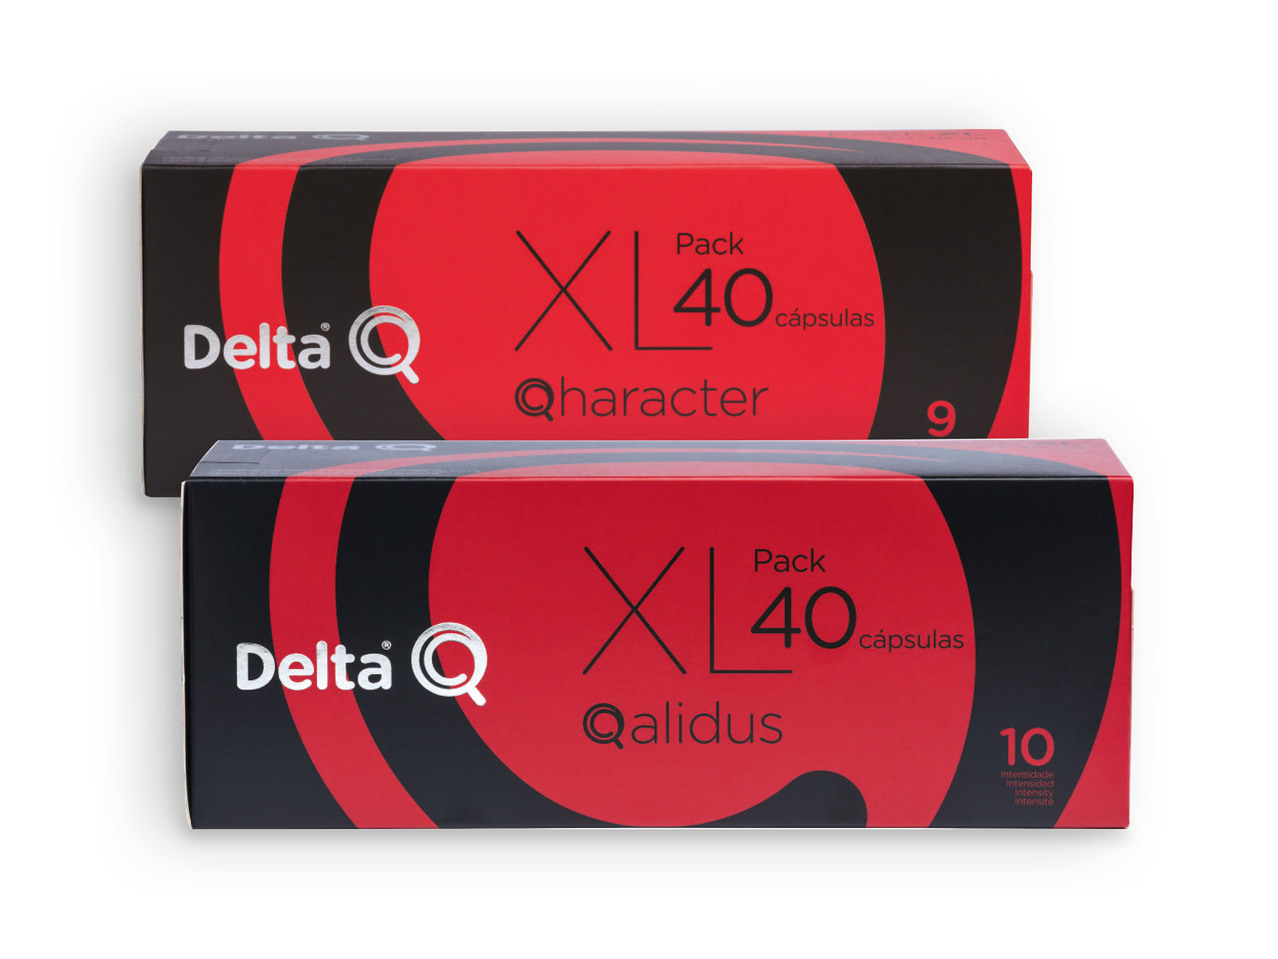 DELTA Q(R) Cápsulas de Café Qharacter / Qalidus Pack XL